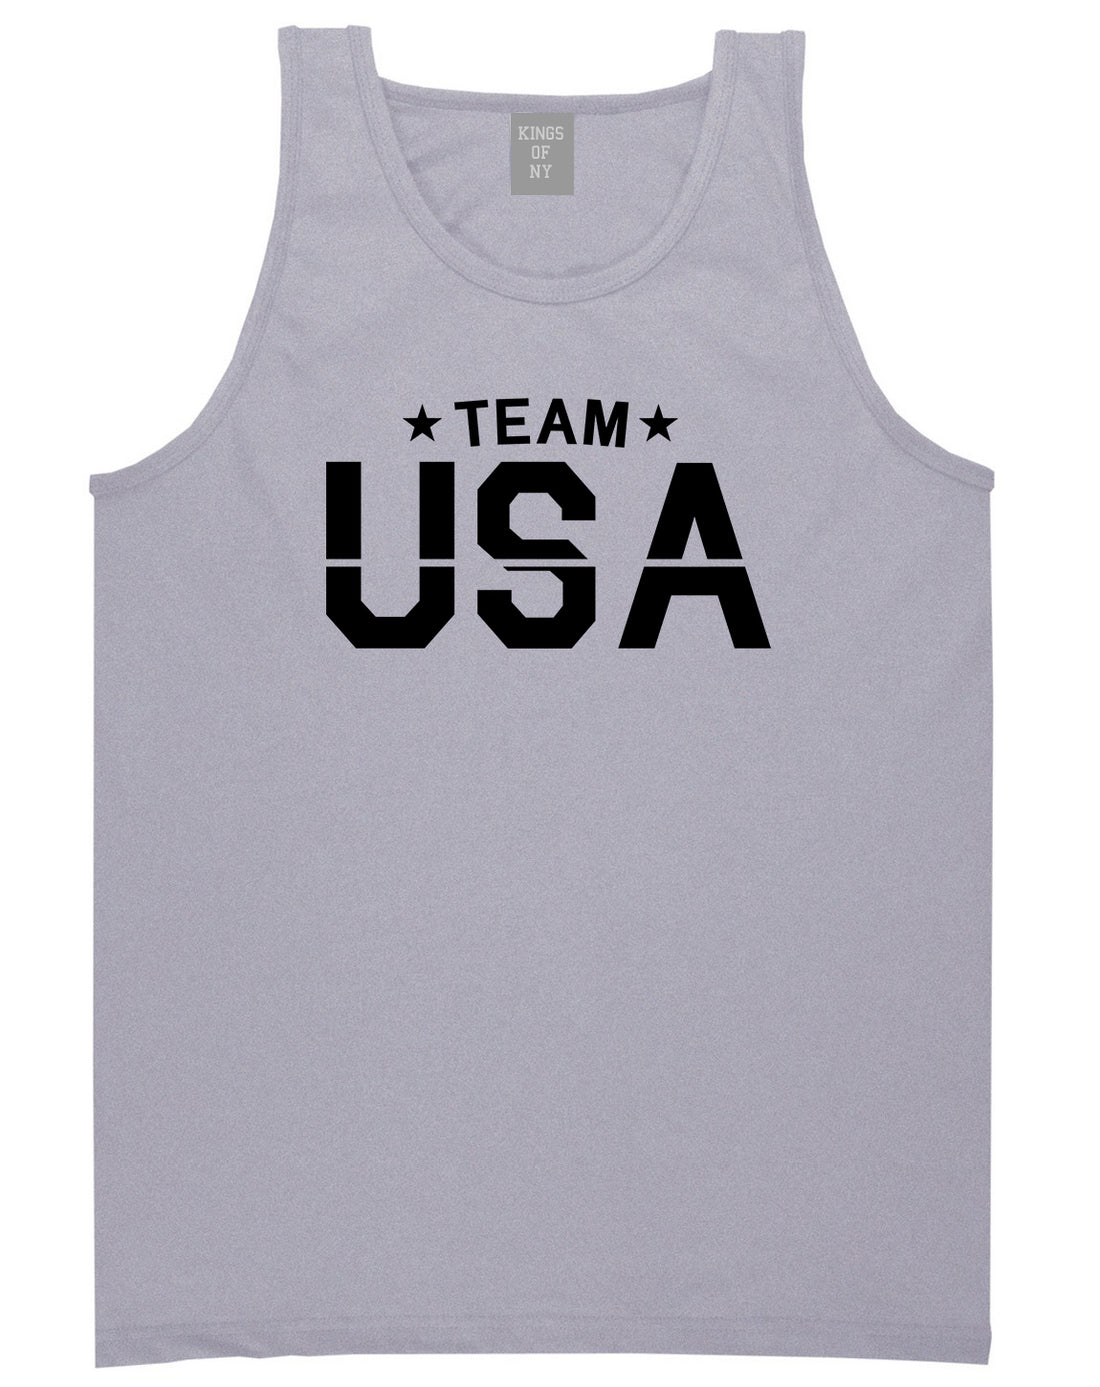 Team USA Mens Tank Top Shirt Grey by Kings Of NY